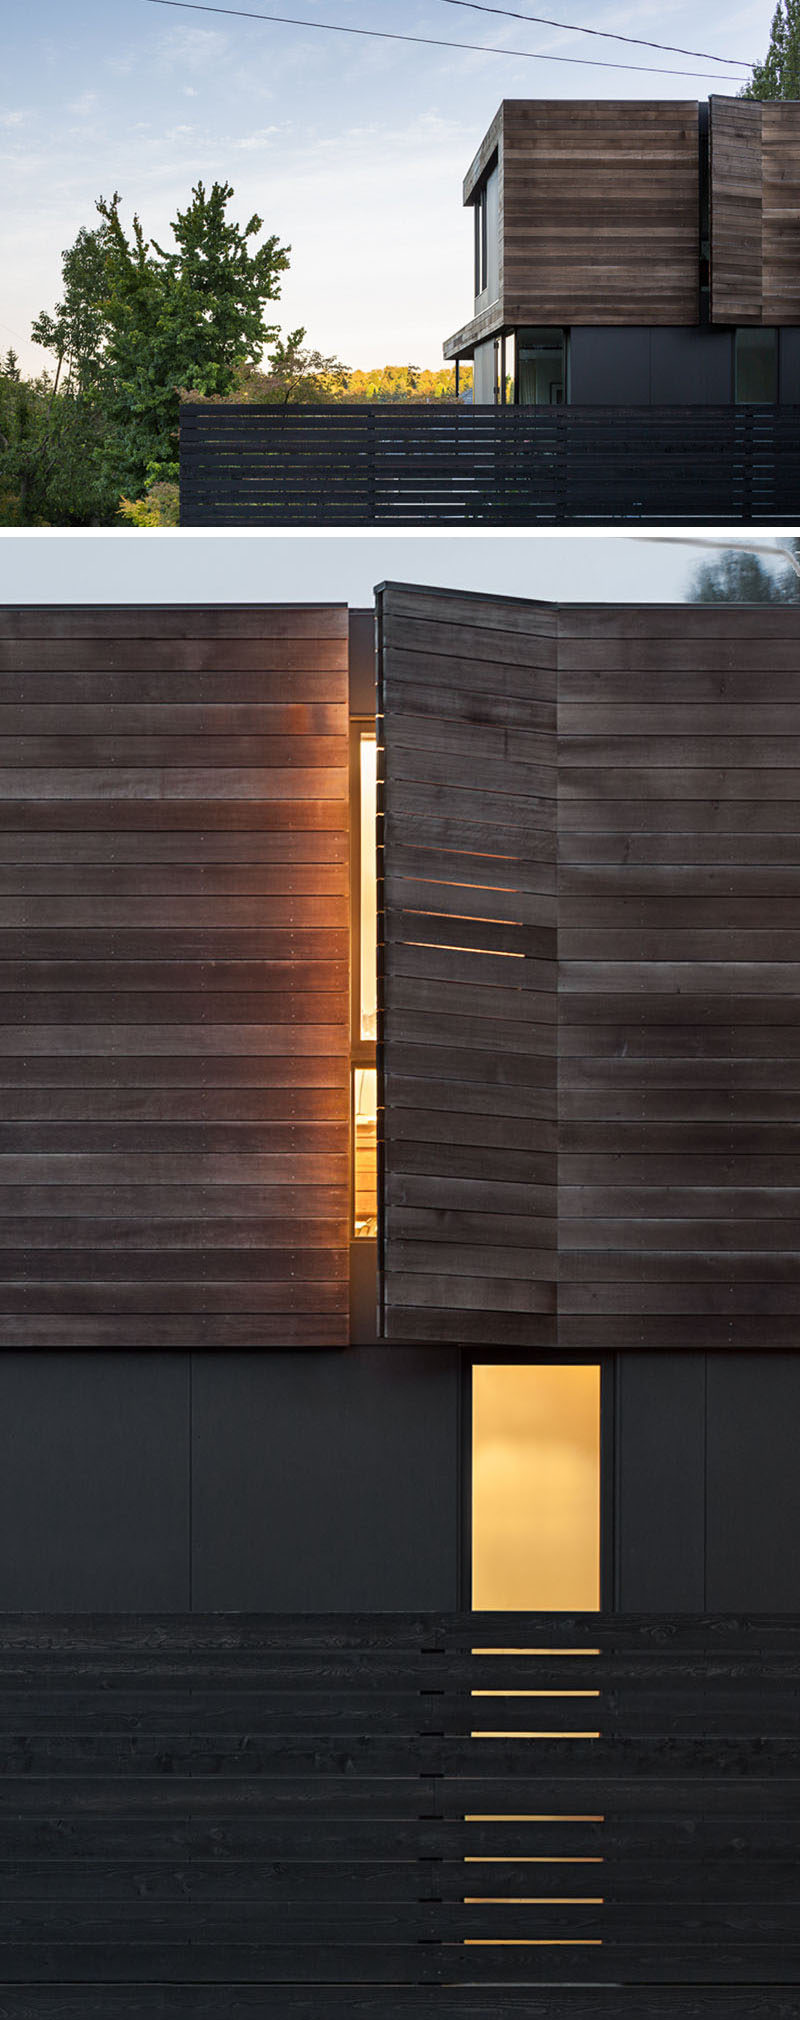 Внешний вид этого современного дома имеет оконные накладки, которые гармонично сочетаются с деревянным фасадом.